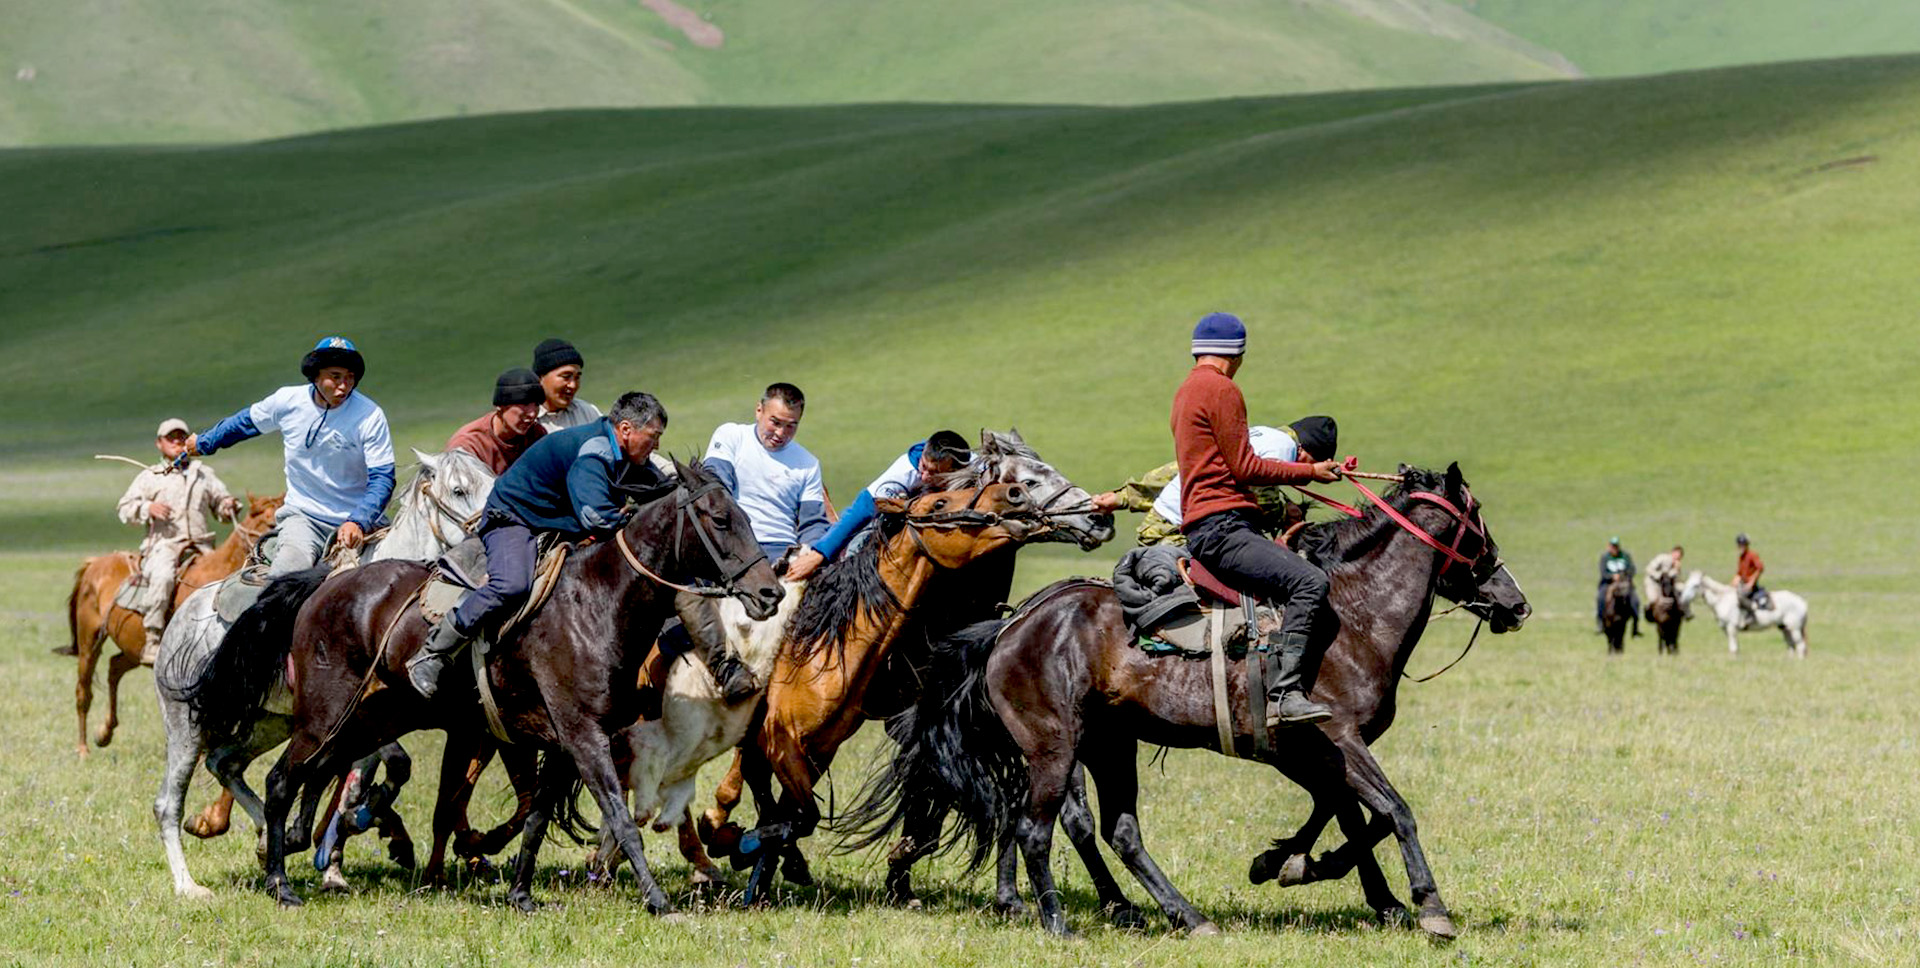 جاذبه های دیدنی قزاقستان رو می شناسید ؟